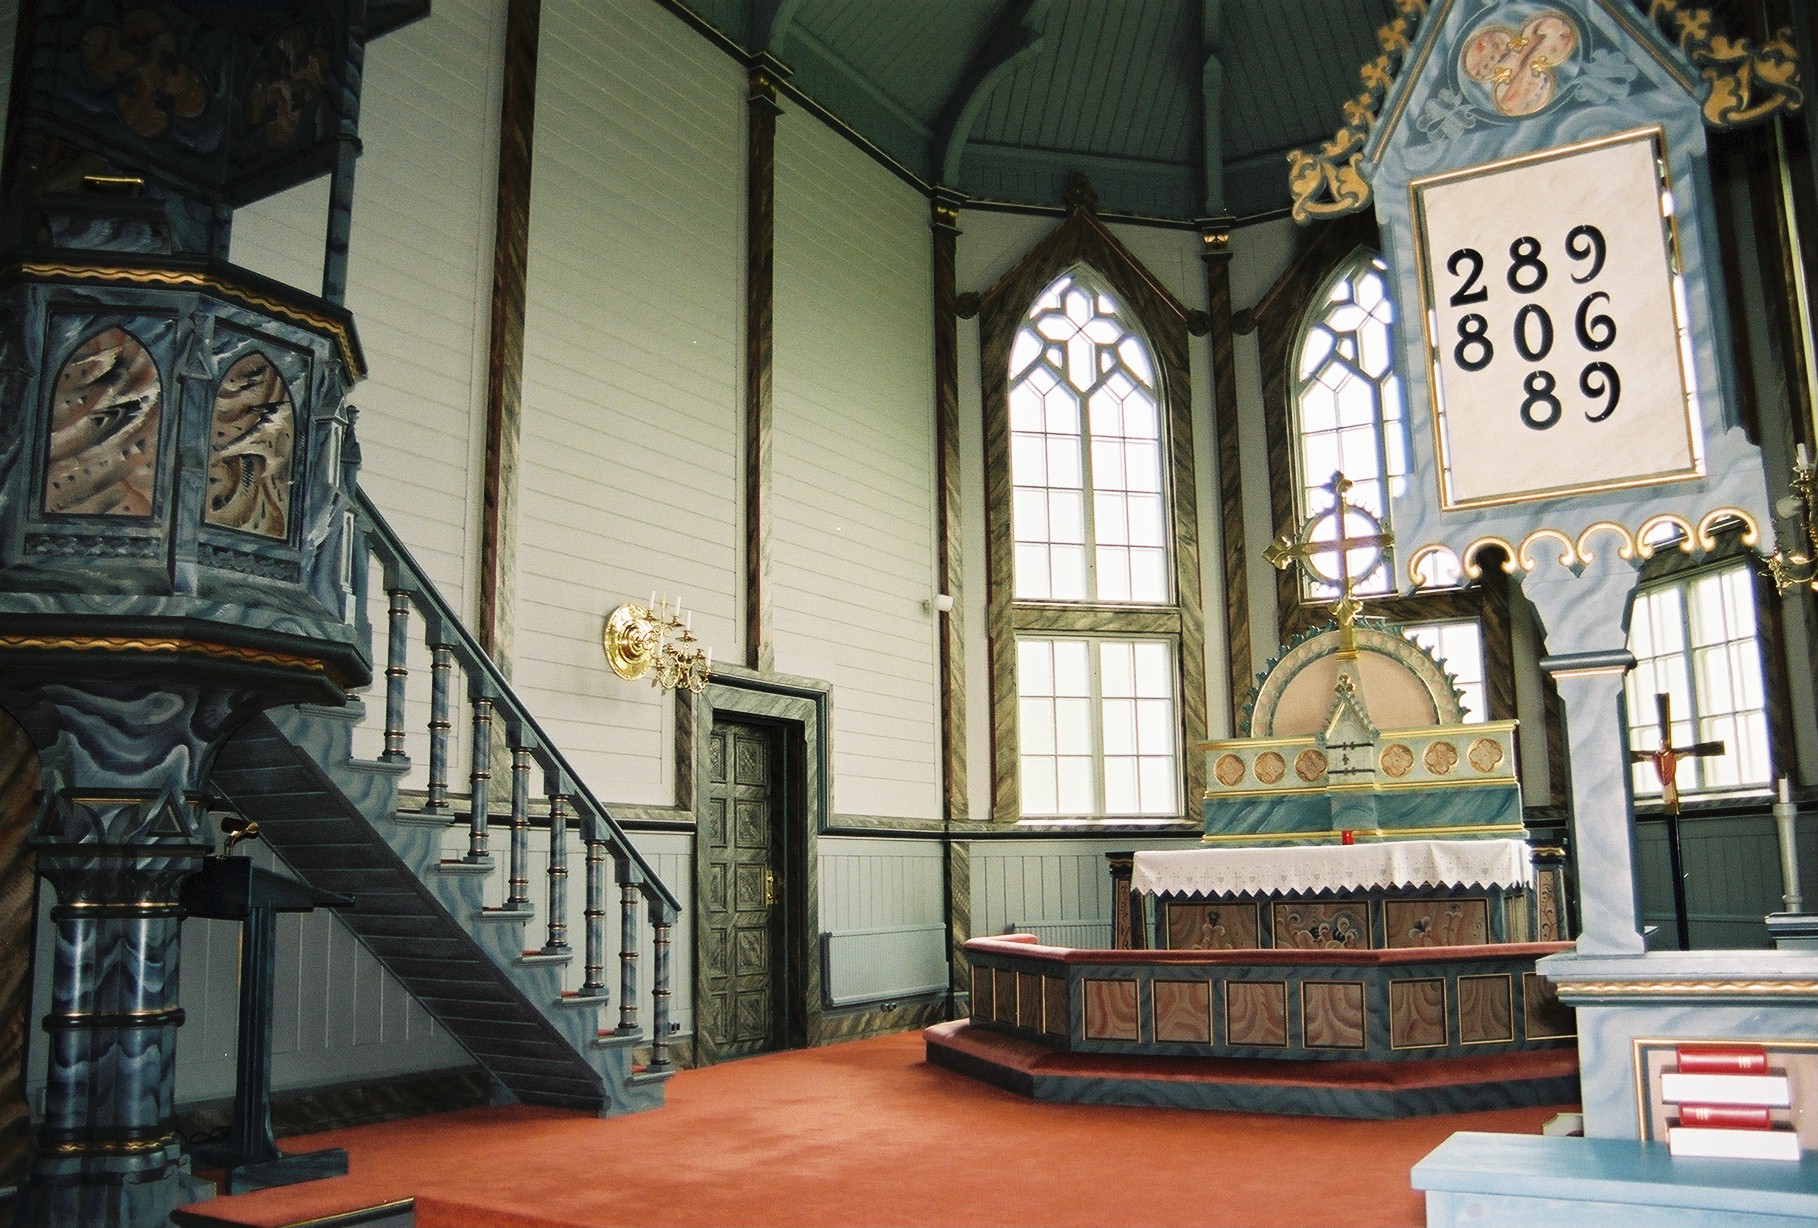 Duveds kyrka, interiör, kyrkorummet, koret.

Bilderna är tagna av Martin Lagergren & Emelie Petersson, bebyggelseantikvarier vid Jämtlands läns museum, i samband med inventeringen, 2004-2005.